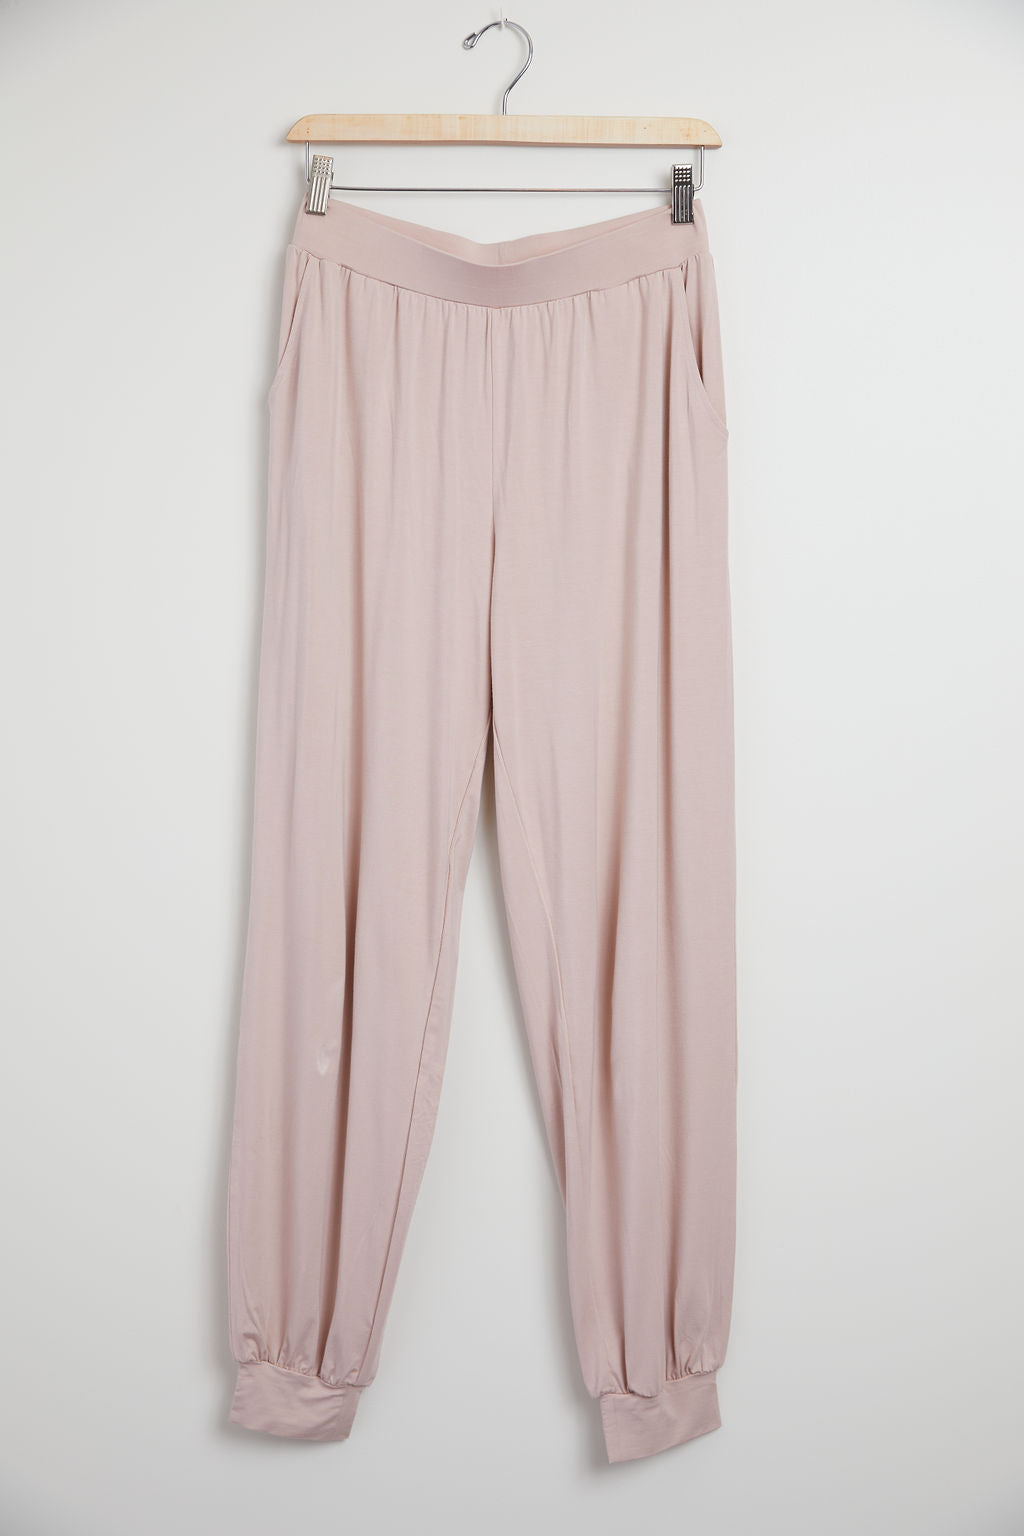 Ali ll Bamboo Sleepwear Set : Rose – Sleepwear Collective